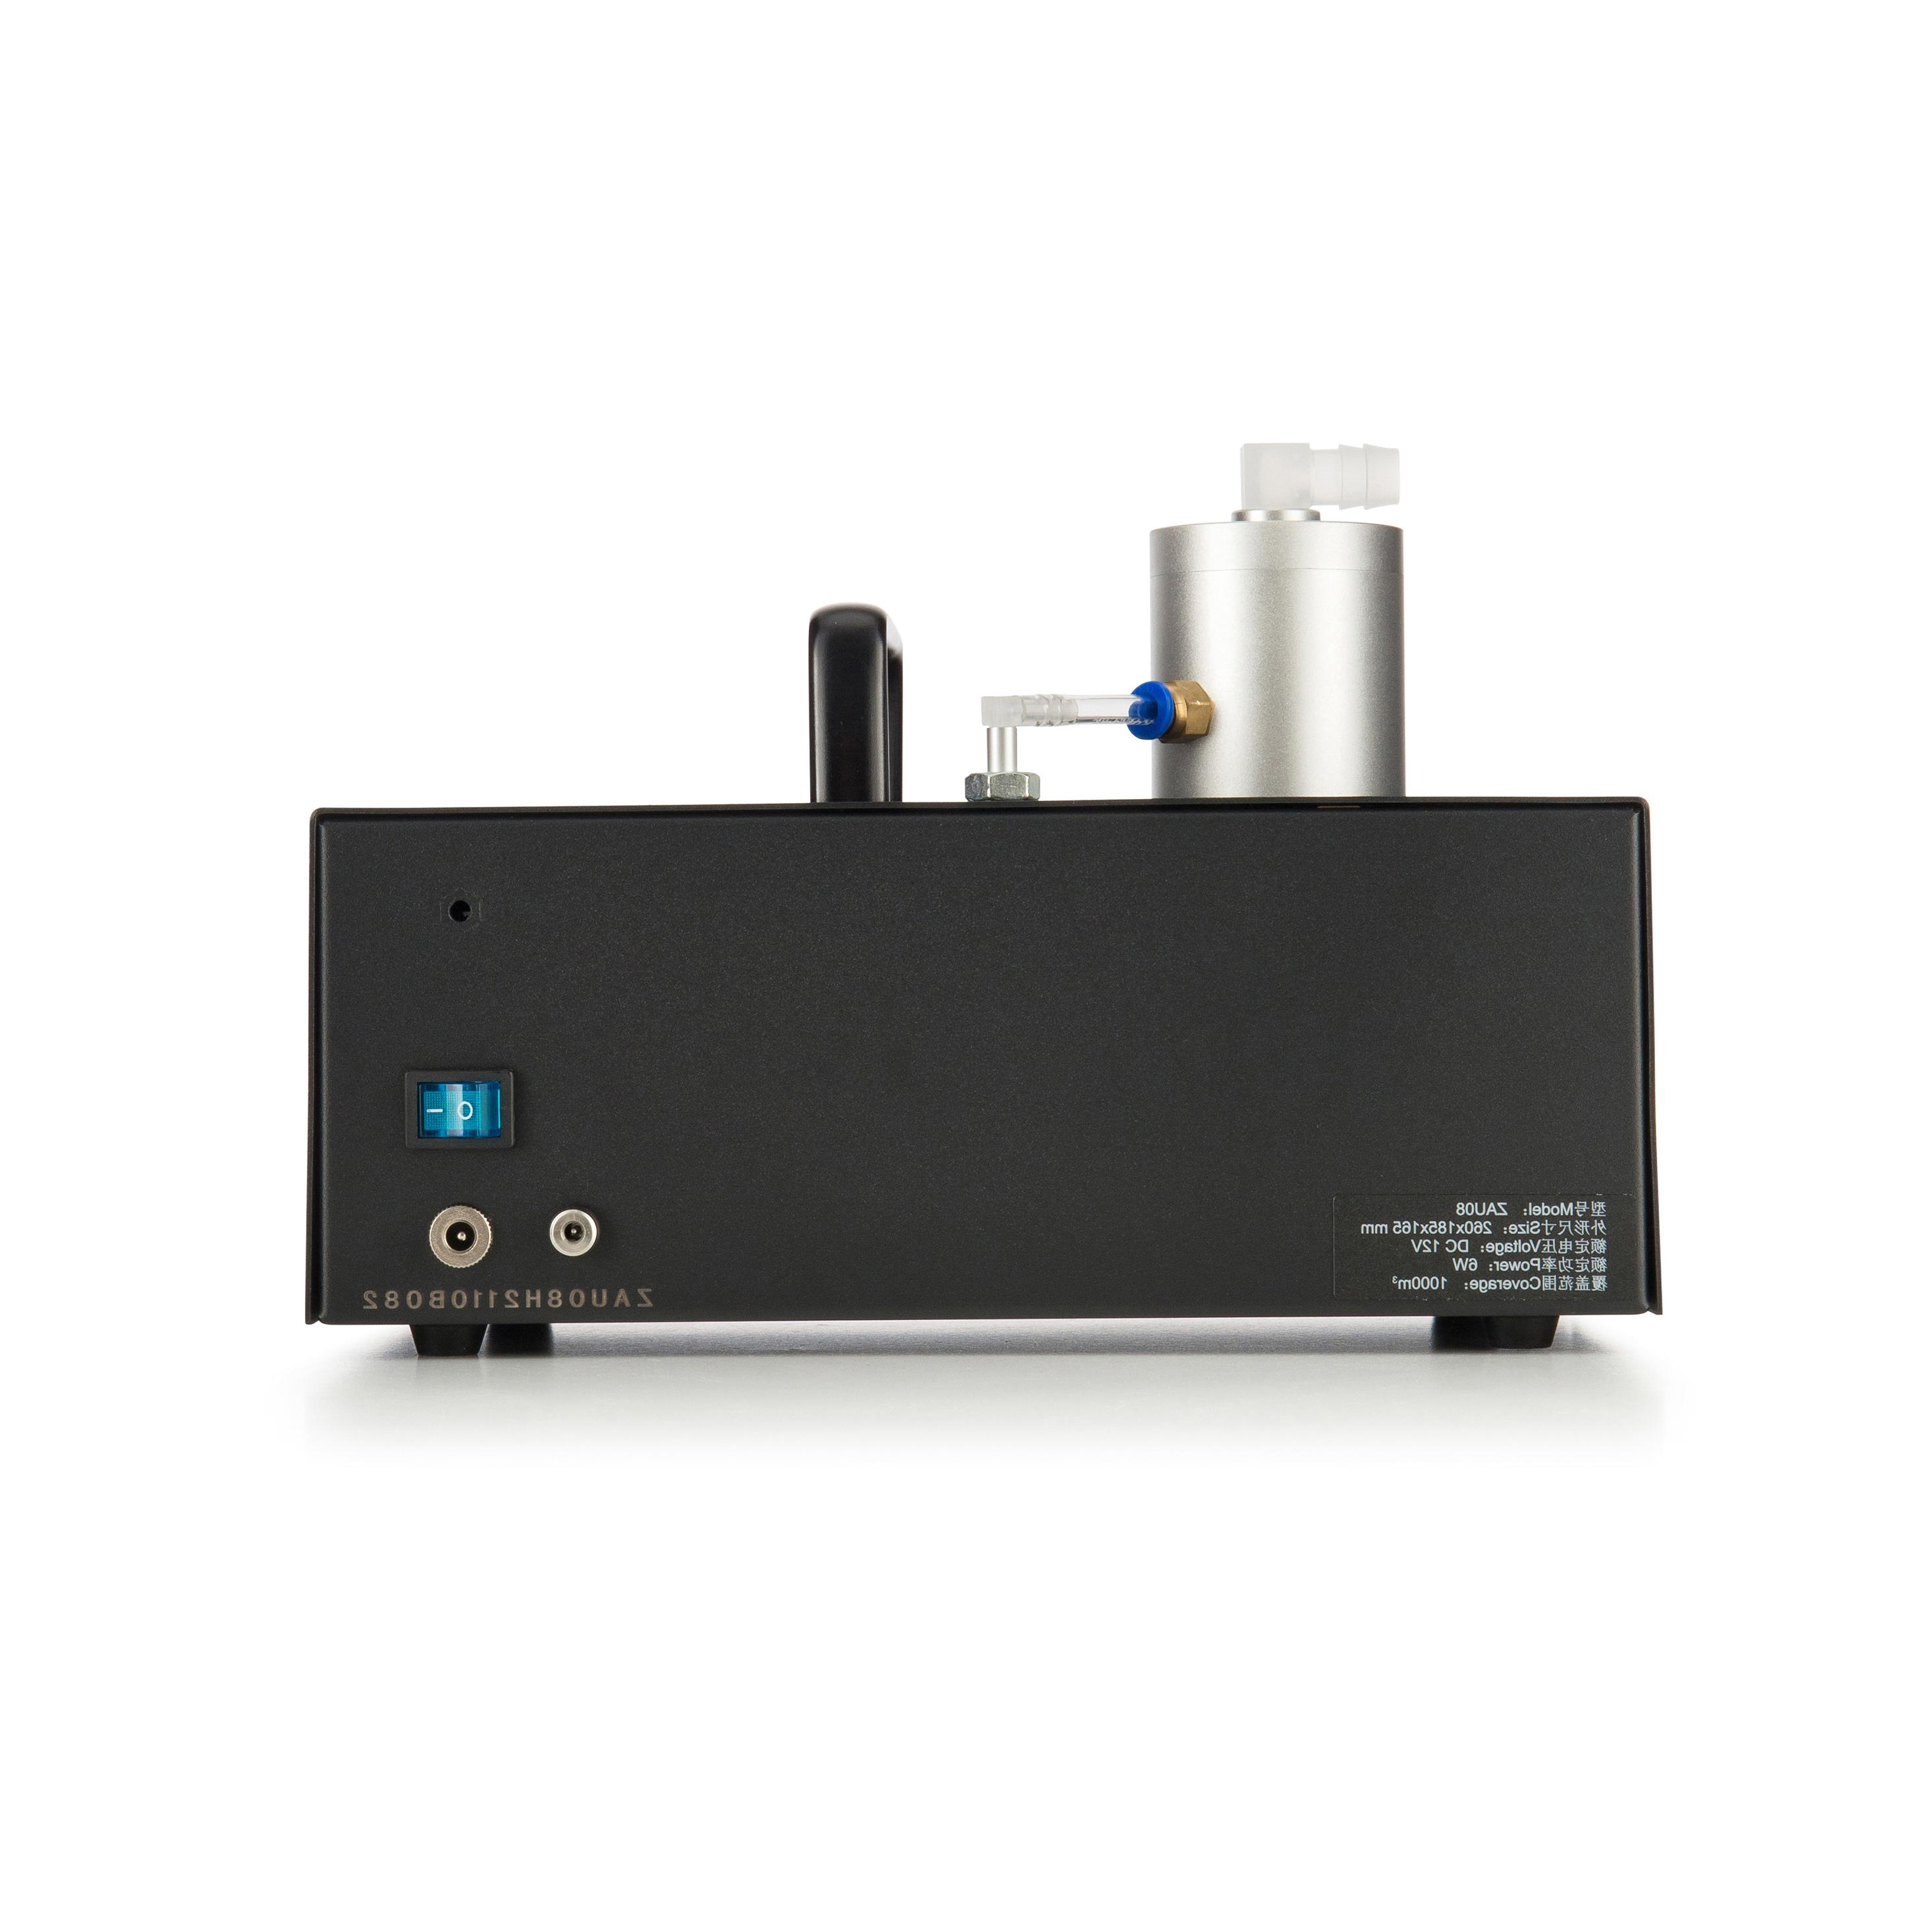 香氛系统ZAU08通过链接盘管机或中央空调新风系统将香味扩散至指定场所的空间，轻松解决香味扩散覆盖范围小、气味效果不明显等问题。.jpg